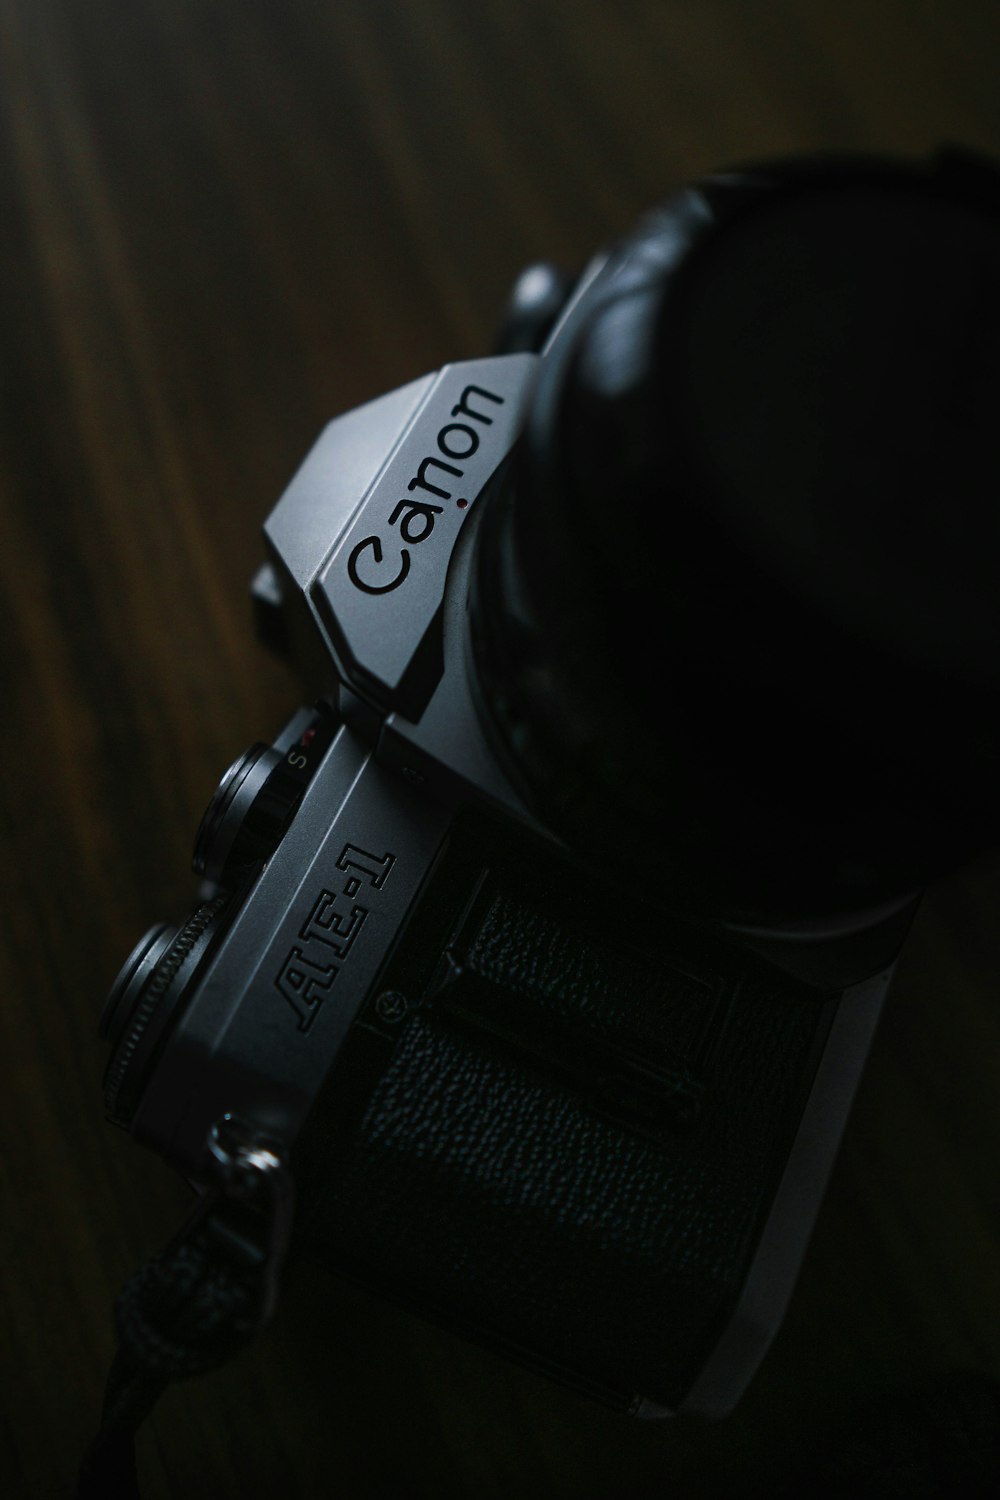 gray Canon AE-1 camera